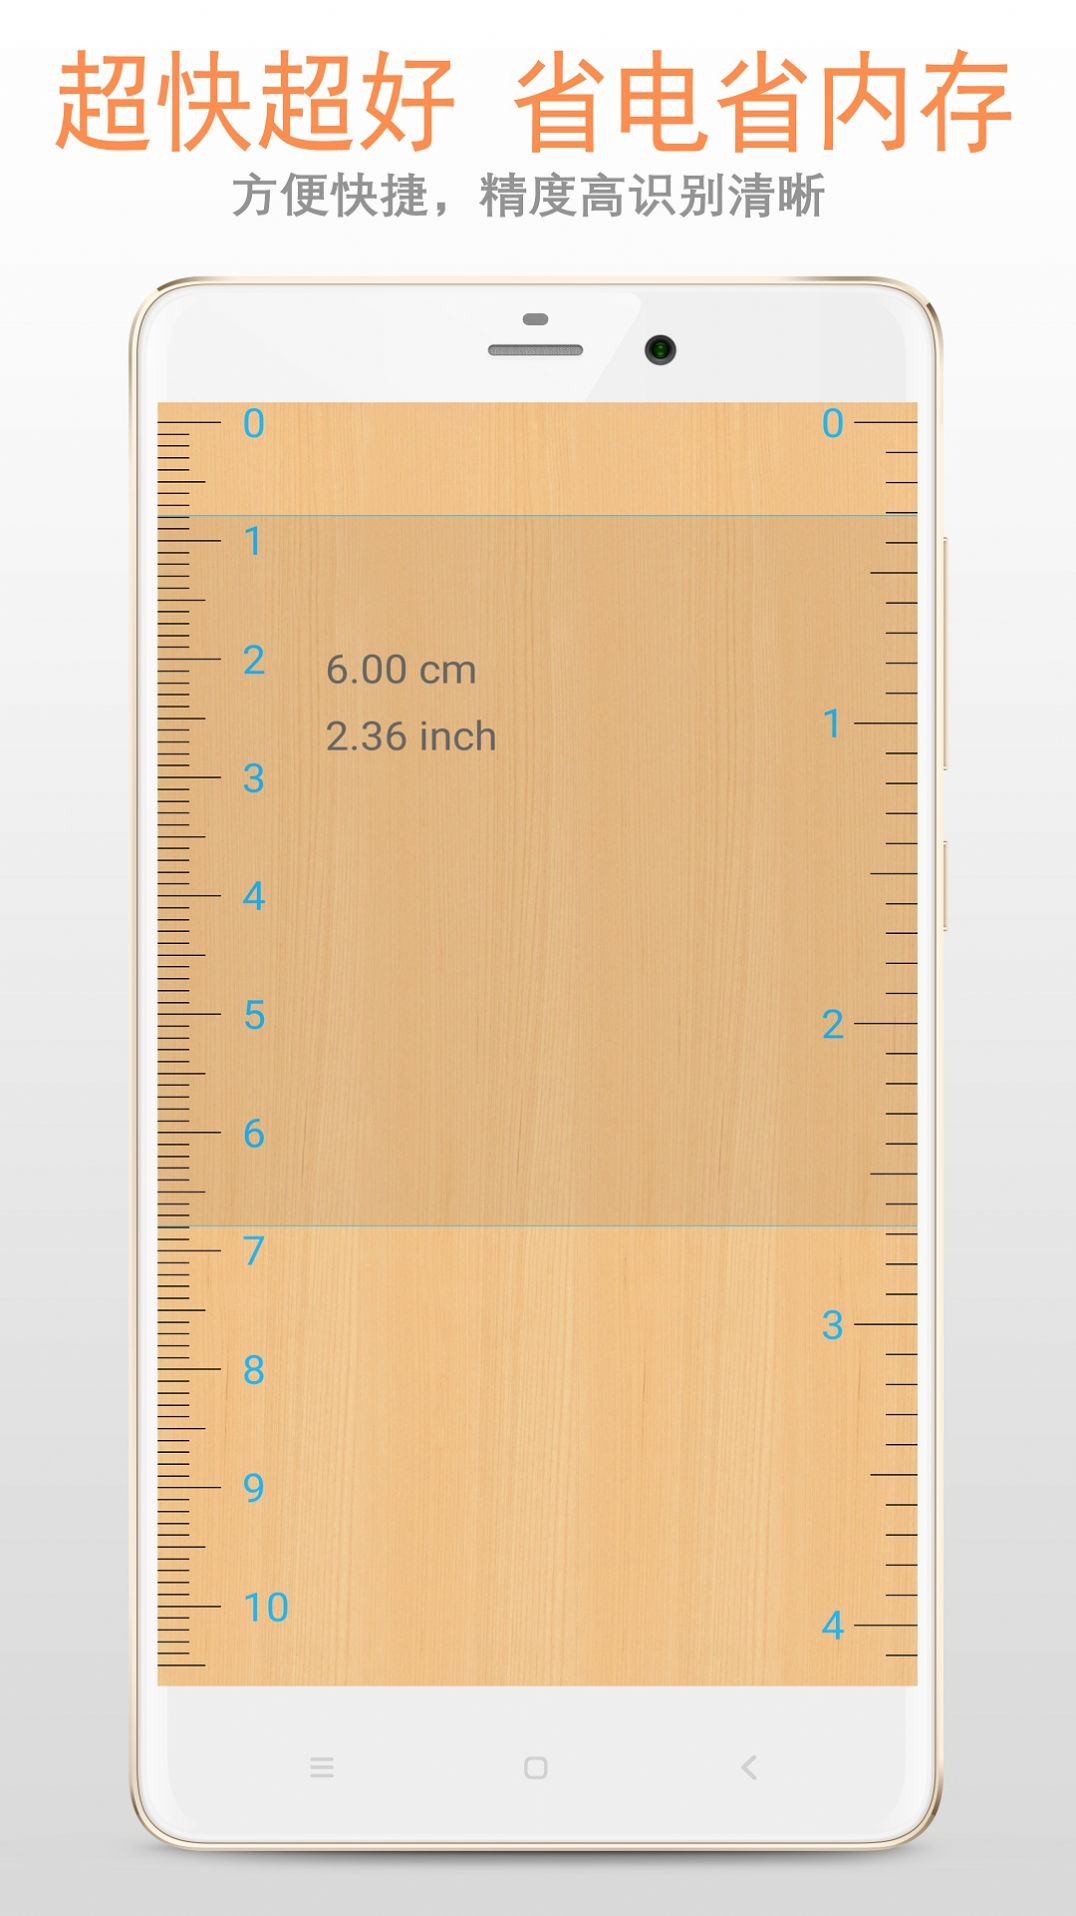 尺app下载,尺测量工具app官方最新版 v332306